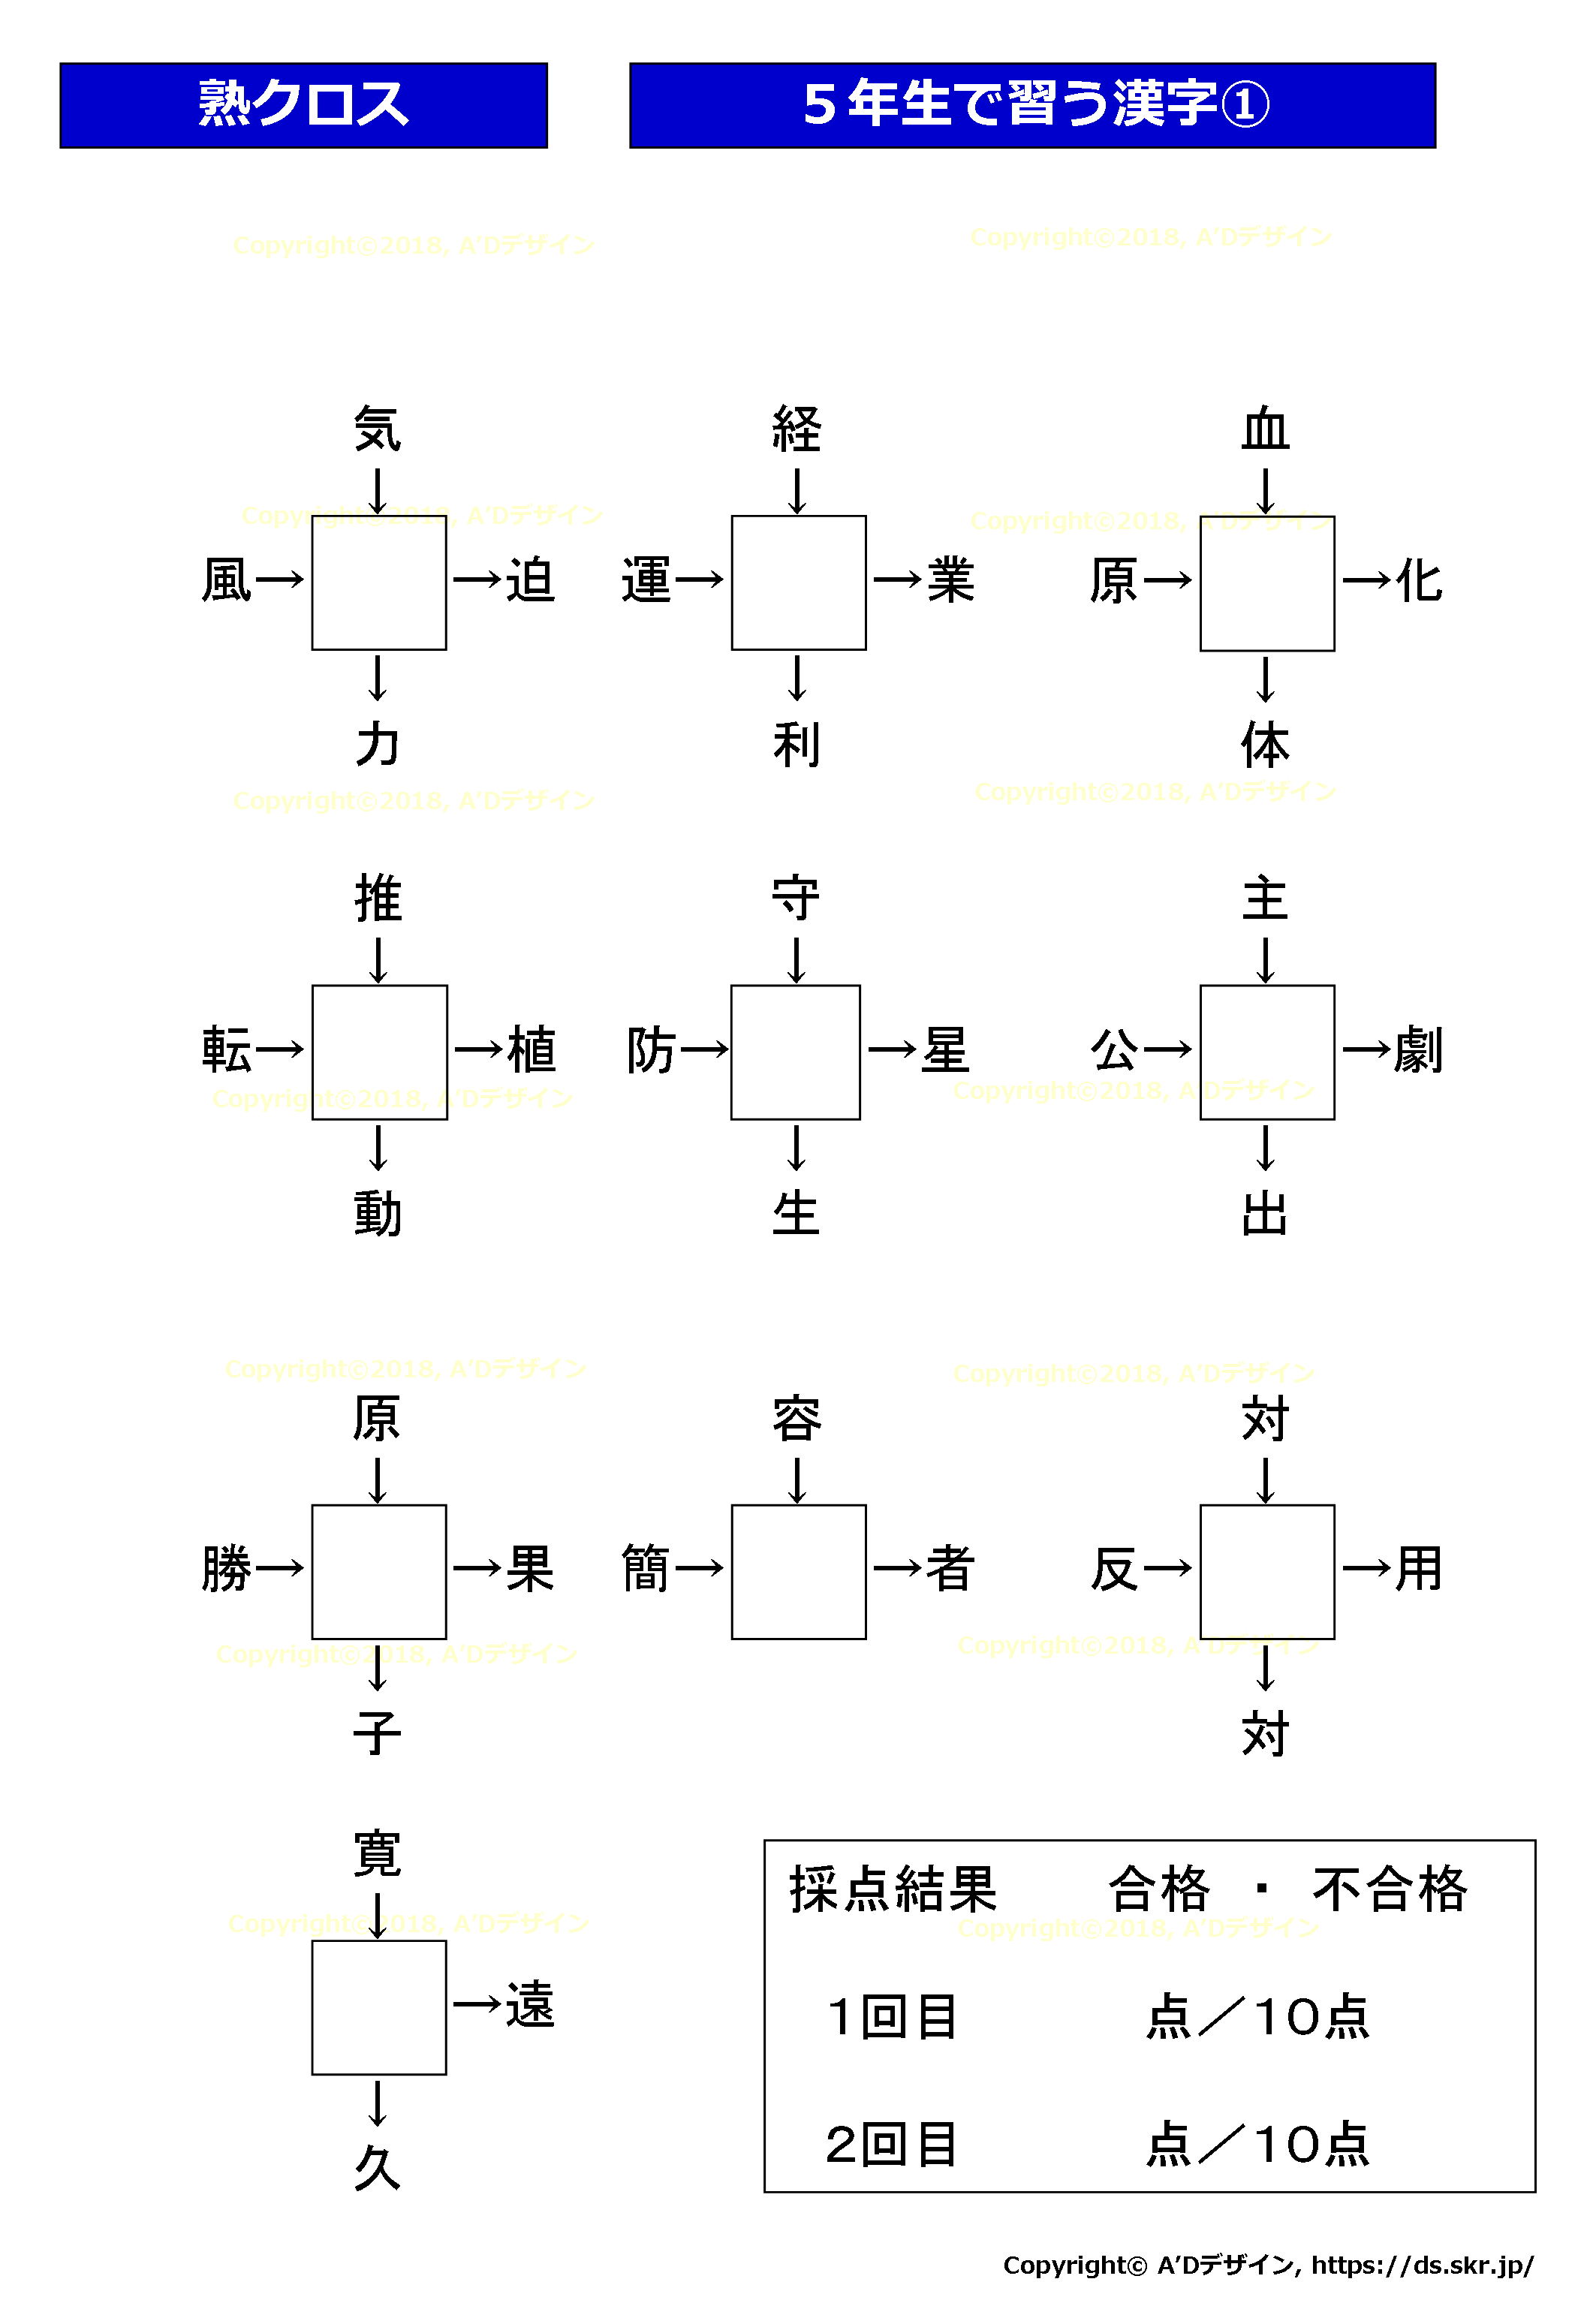 熟語クロスワード 漢字を当てはめるクロスワード10問クイズです